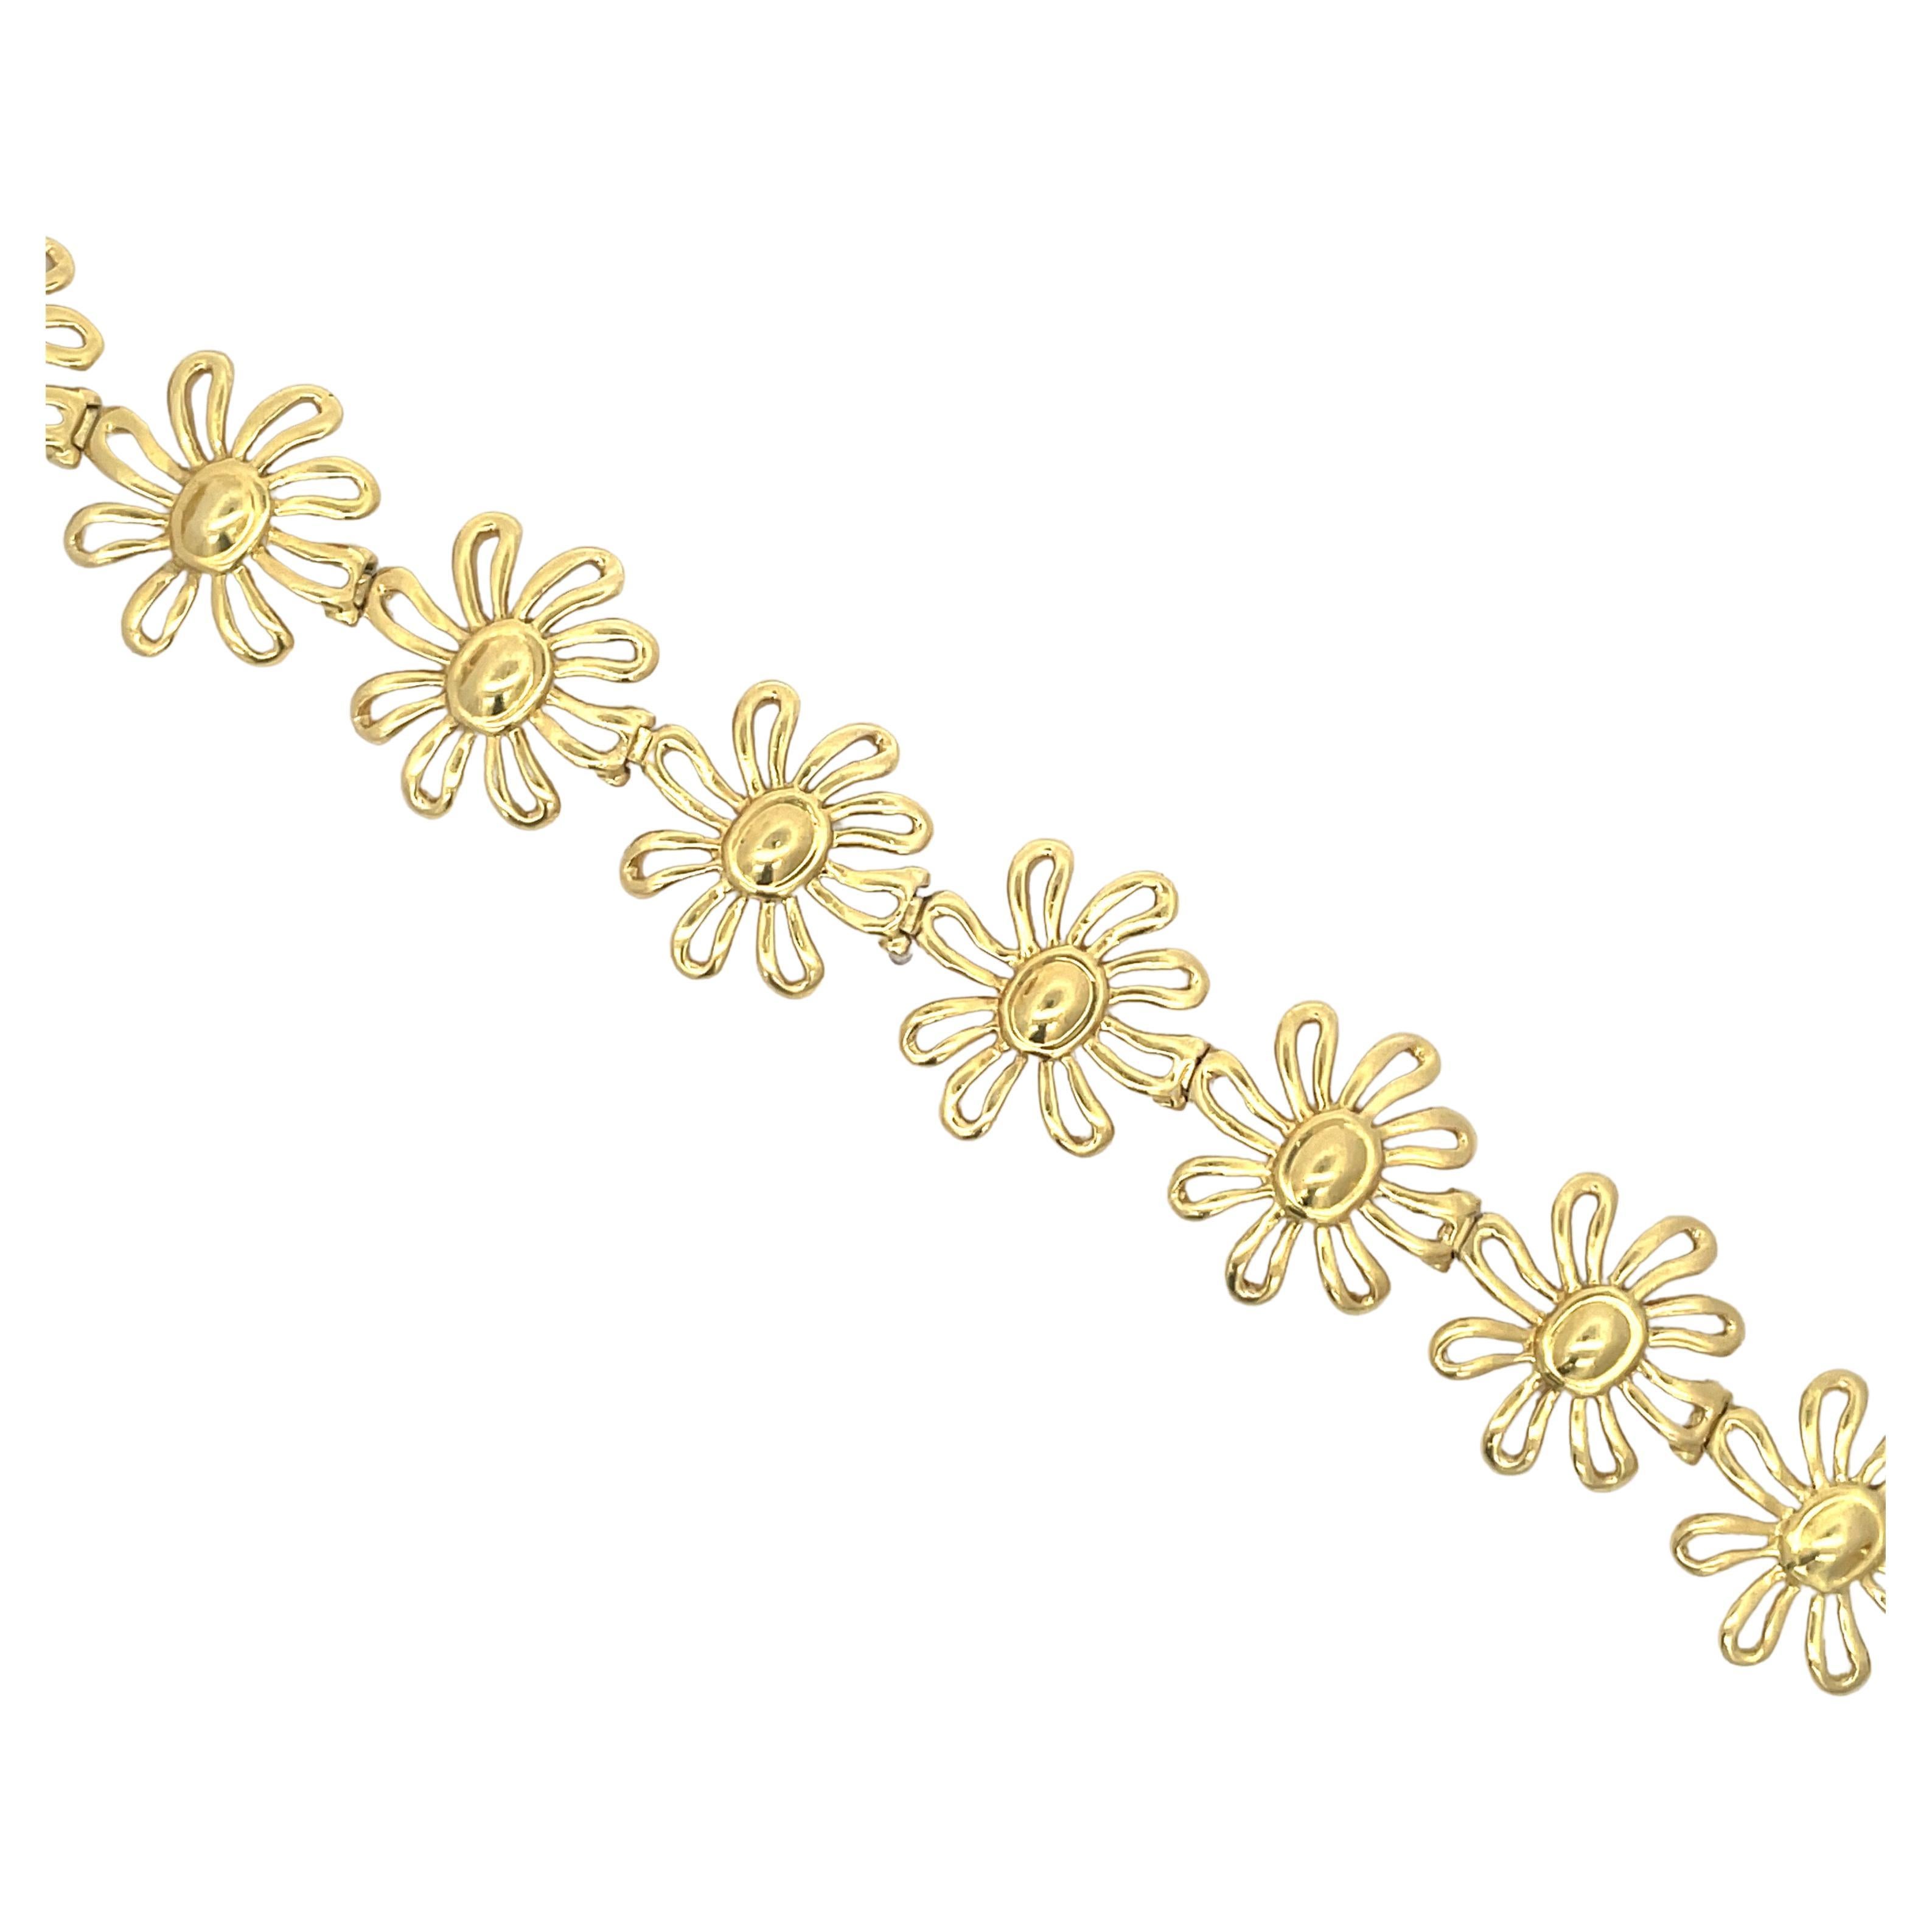 Tiffany & Co. Paloma Picasso Daisy Bracelet 34.6 Grams 18 Karat Yellow Gold